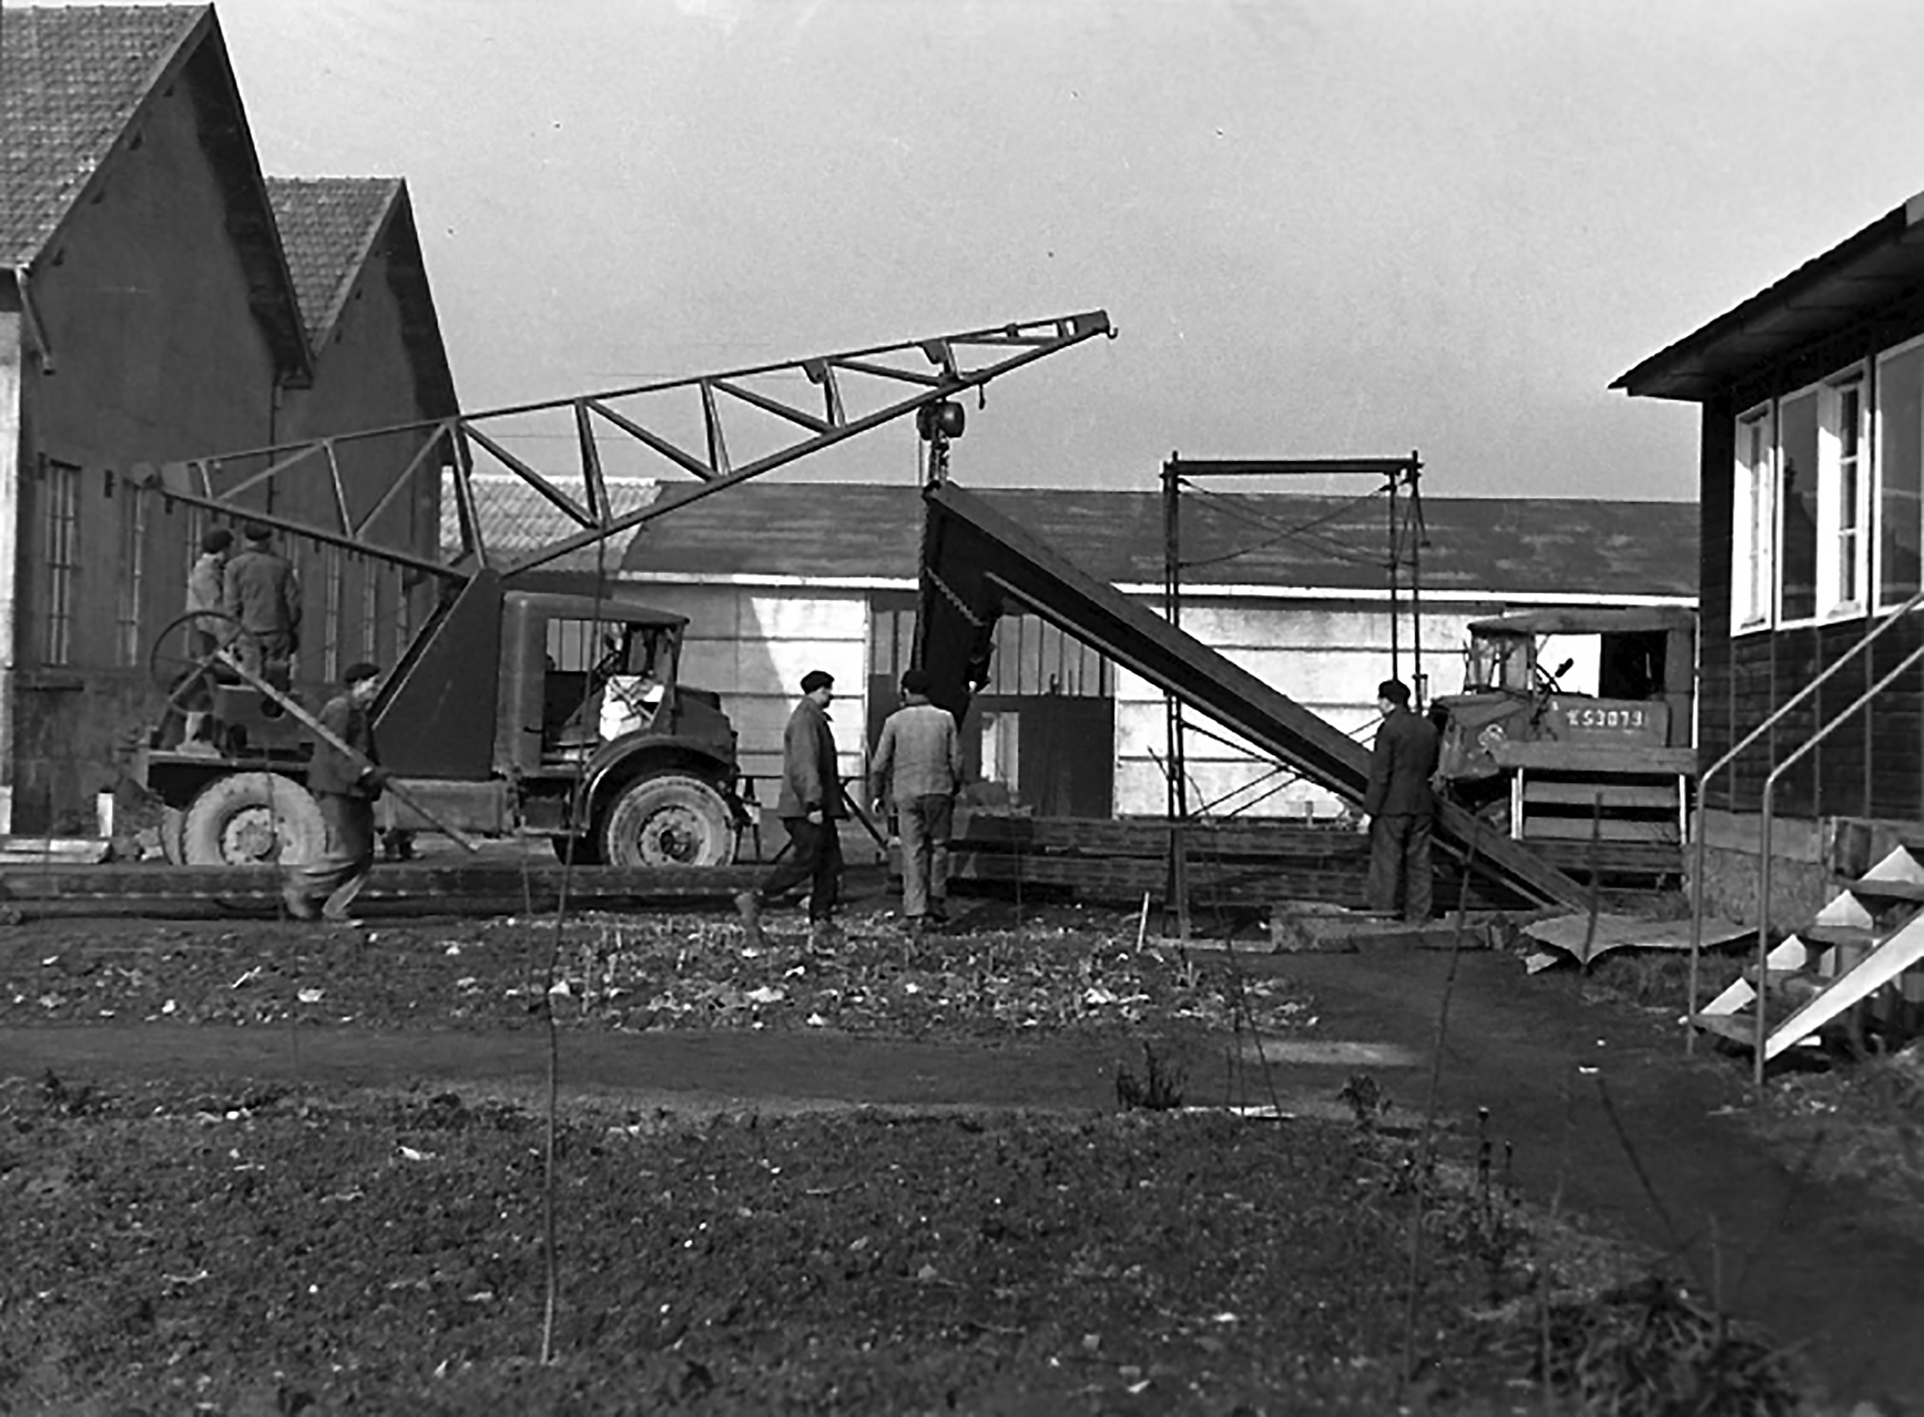 Institut de recherches de la sidérurgie française, I.R.S.I.D., laboratoires de Saint-Germain-en-Laye, 1947-52 (René A. Coulon, arch.). Fabrication des portiques à l’usine de Maxéville.